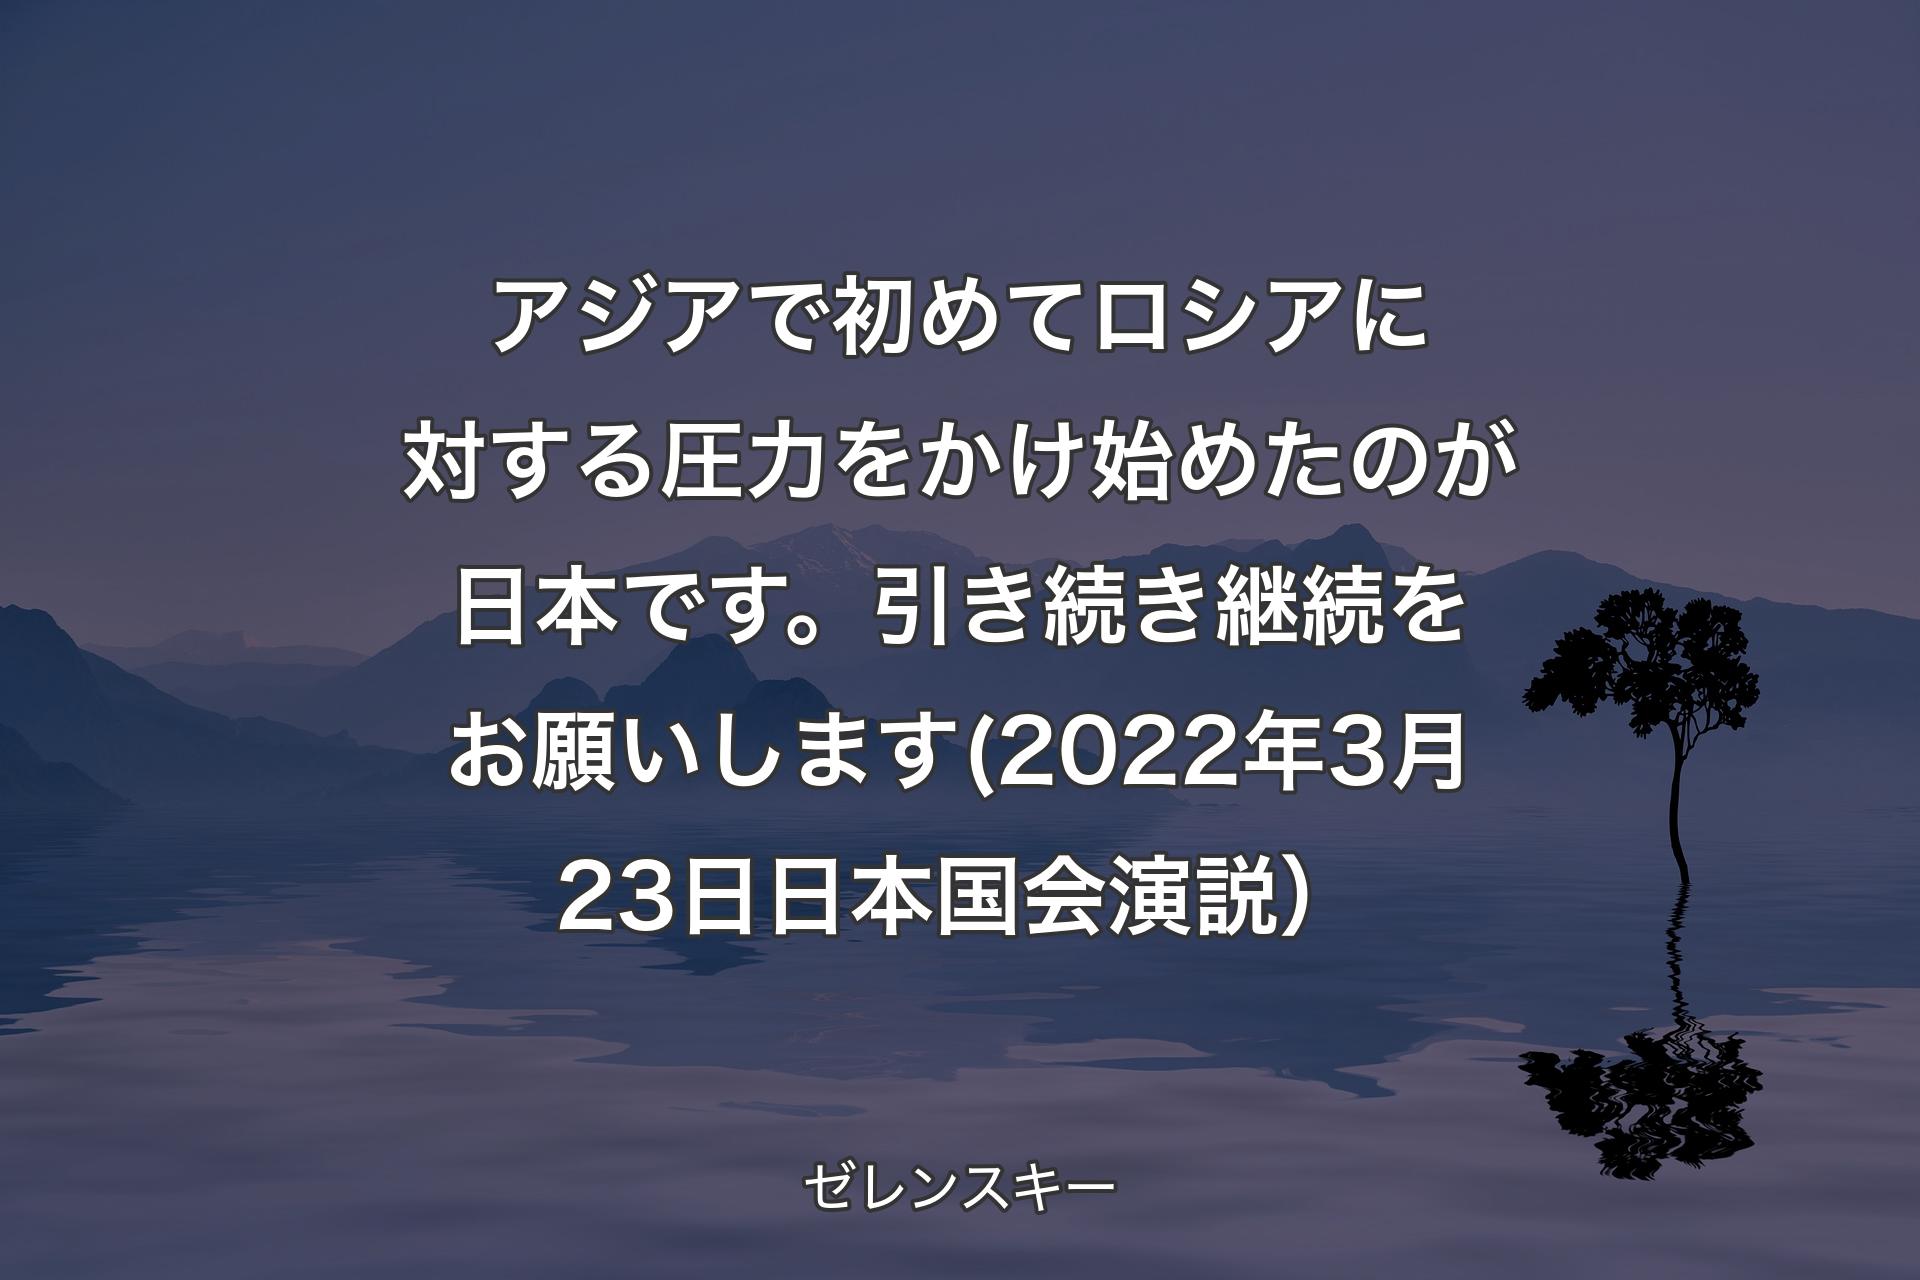 【背景4】アジアで初めてロシアに対する圧力をかけ始めたのが日本です。引き続き継続をお願いします(2022年3月23日 日本国会演説） - ゼレンスキー